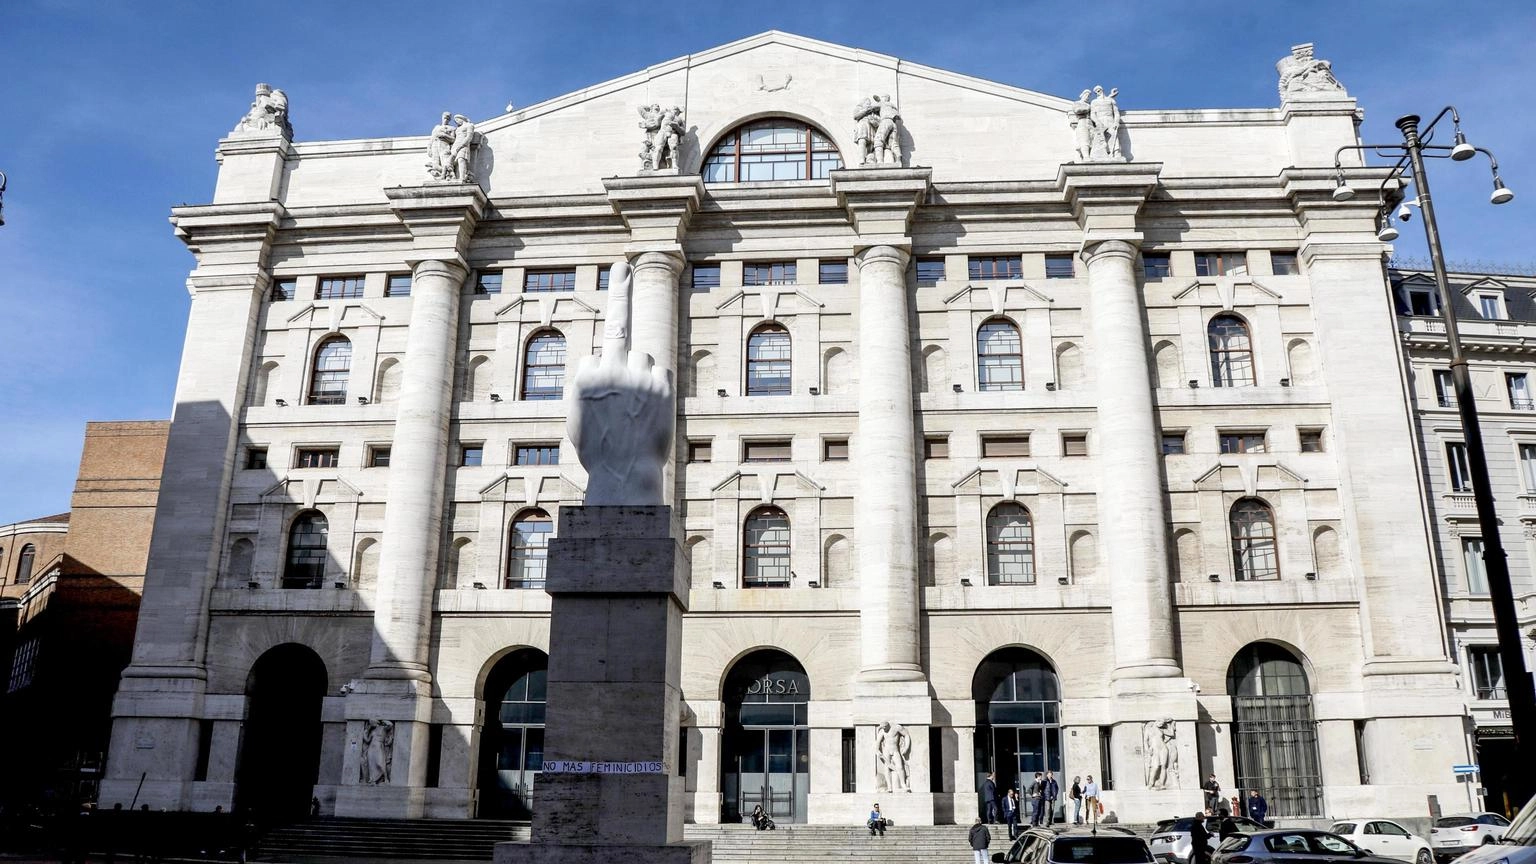 Borsa: Milano chiude in calo, Ftse Mib -0,68%